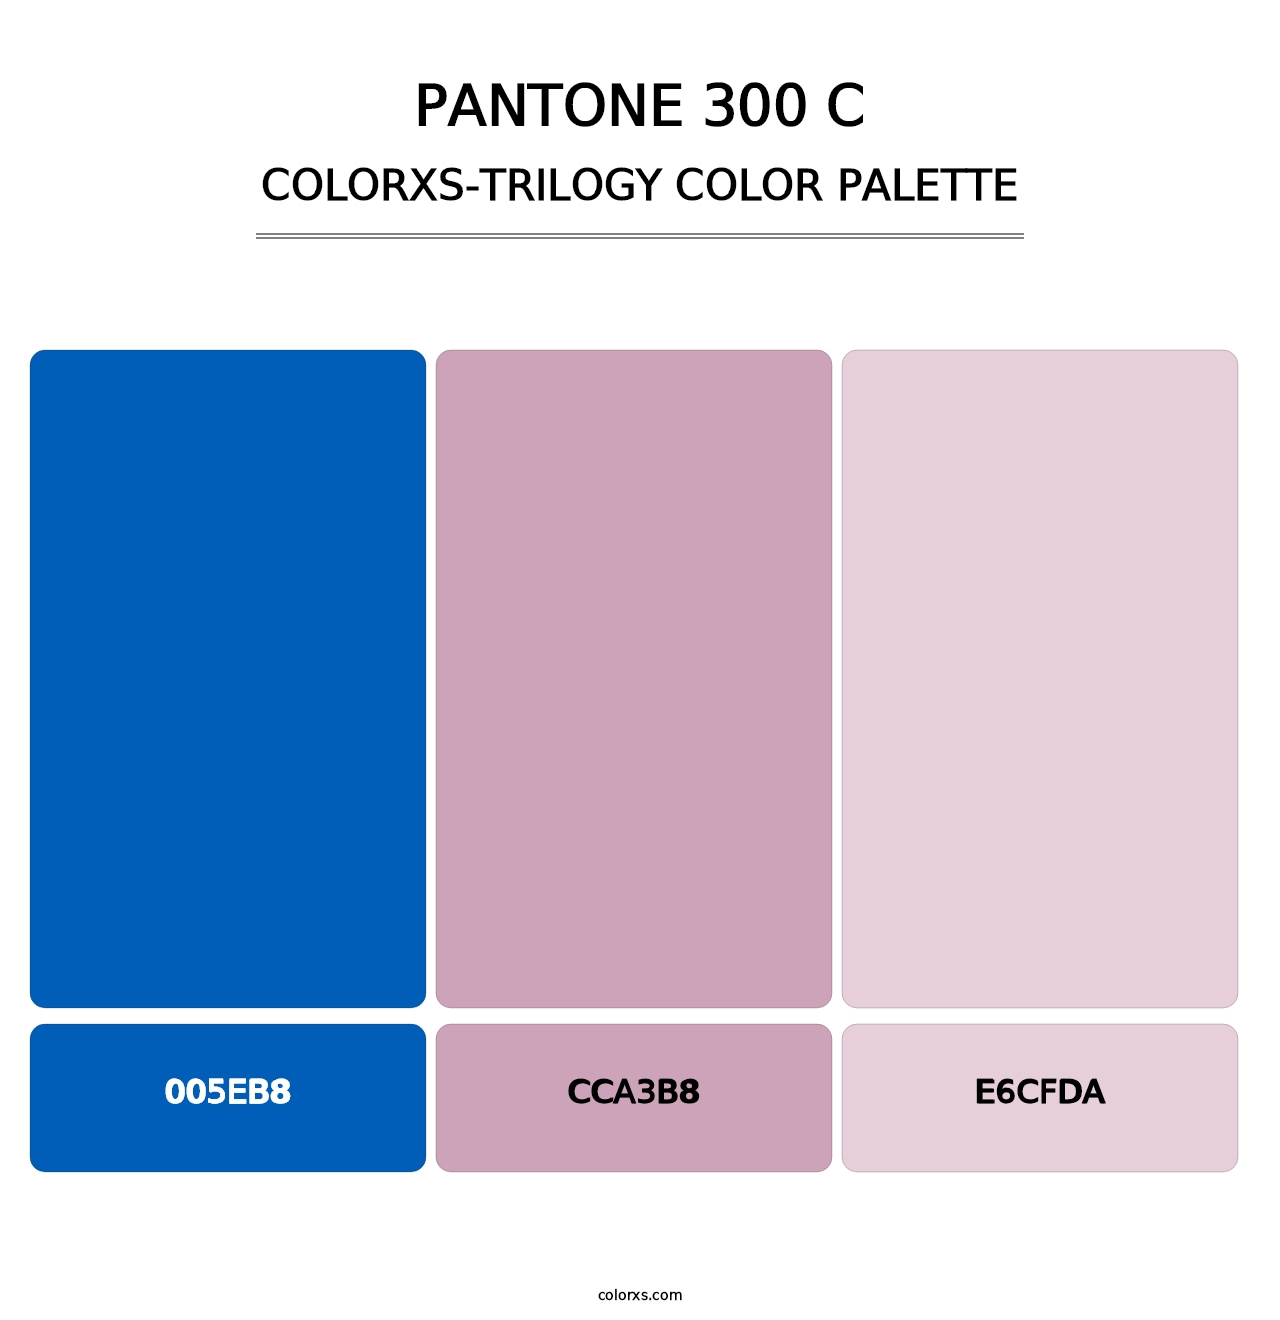 PANTONE 300 C - Colorxs Trilogy Palette